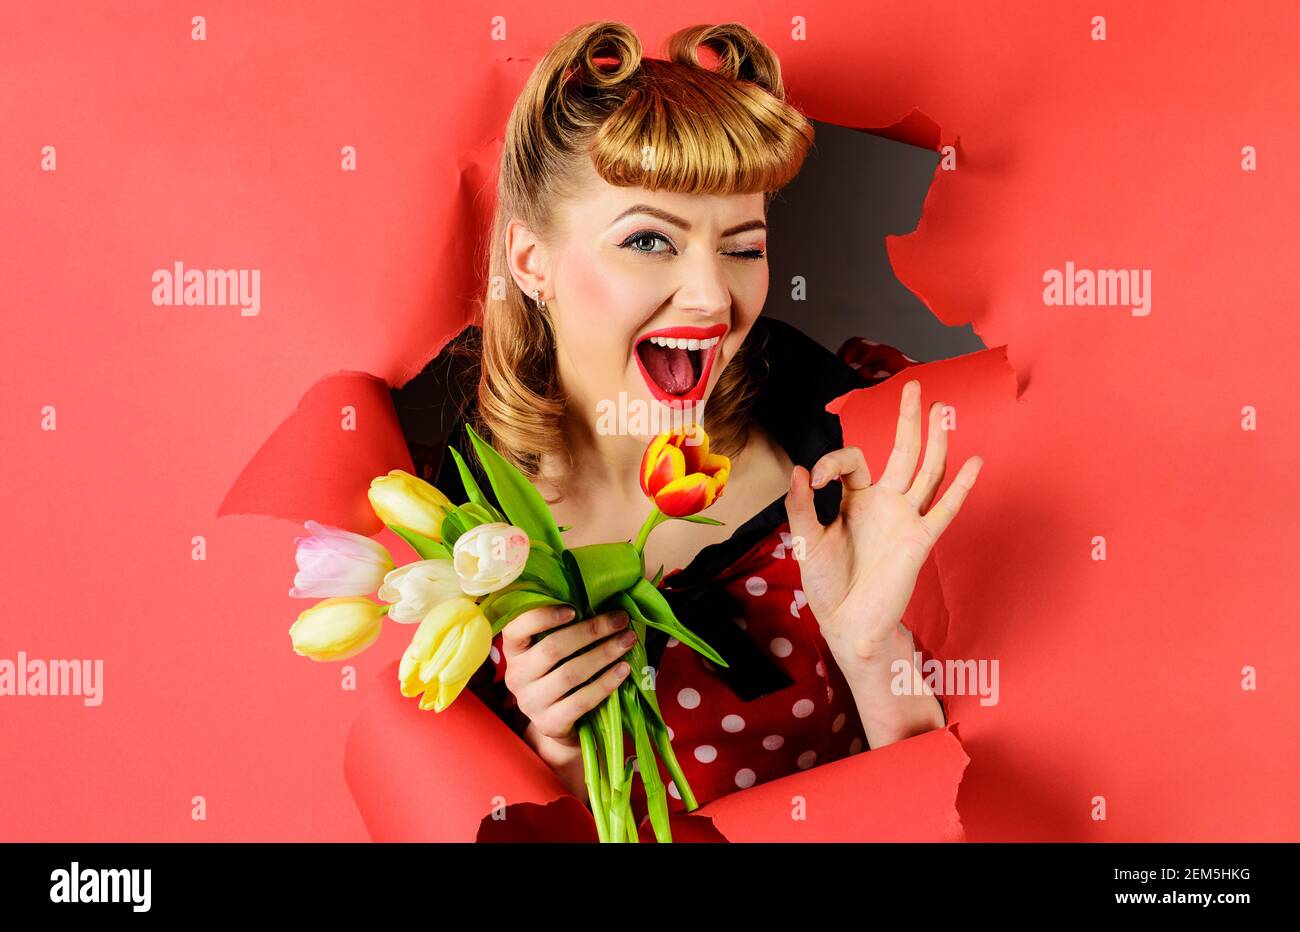 Winkende Frau mit Tulpen zeigt Schild ok. Lächelnd Pinup Mädchen durch Papier suchen. Glückliches Weibchen mit Blumenstrauß. Stockfoto